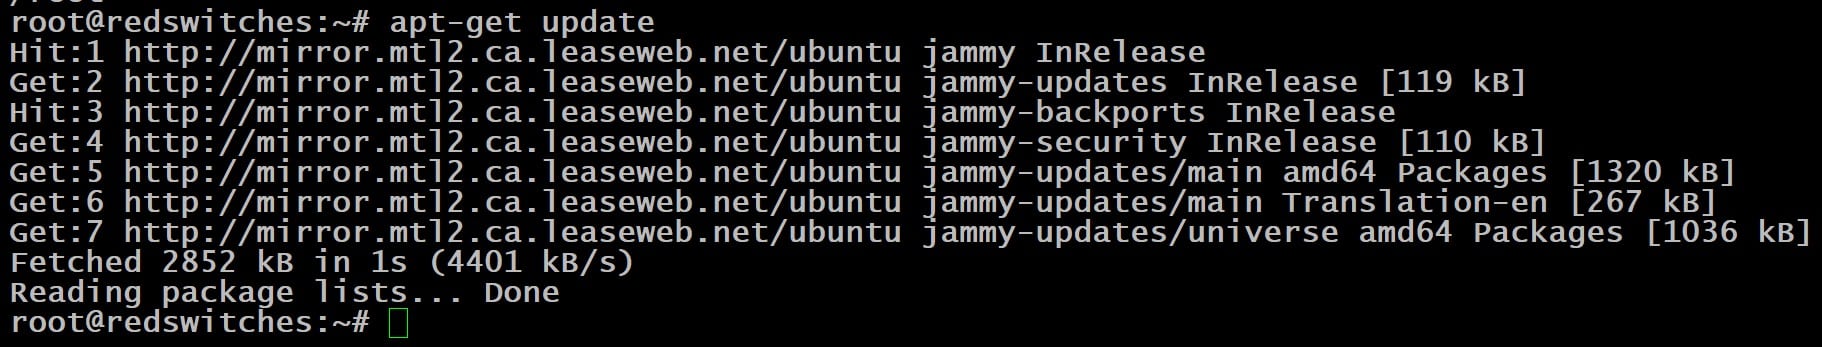 Step #1 Update the Ubuntu Package Index